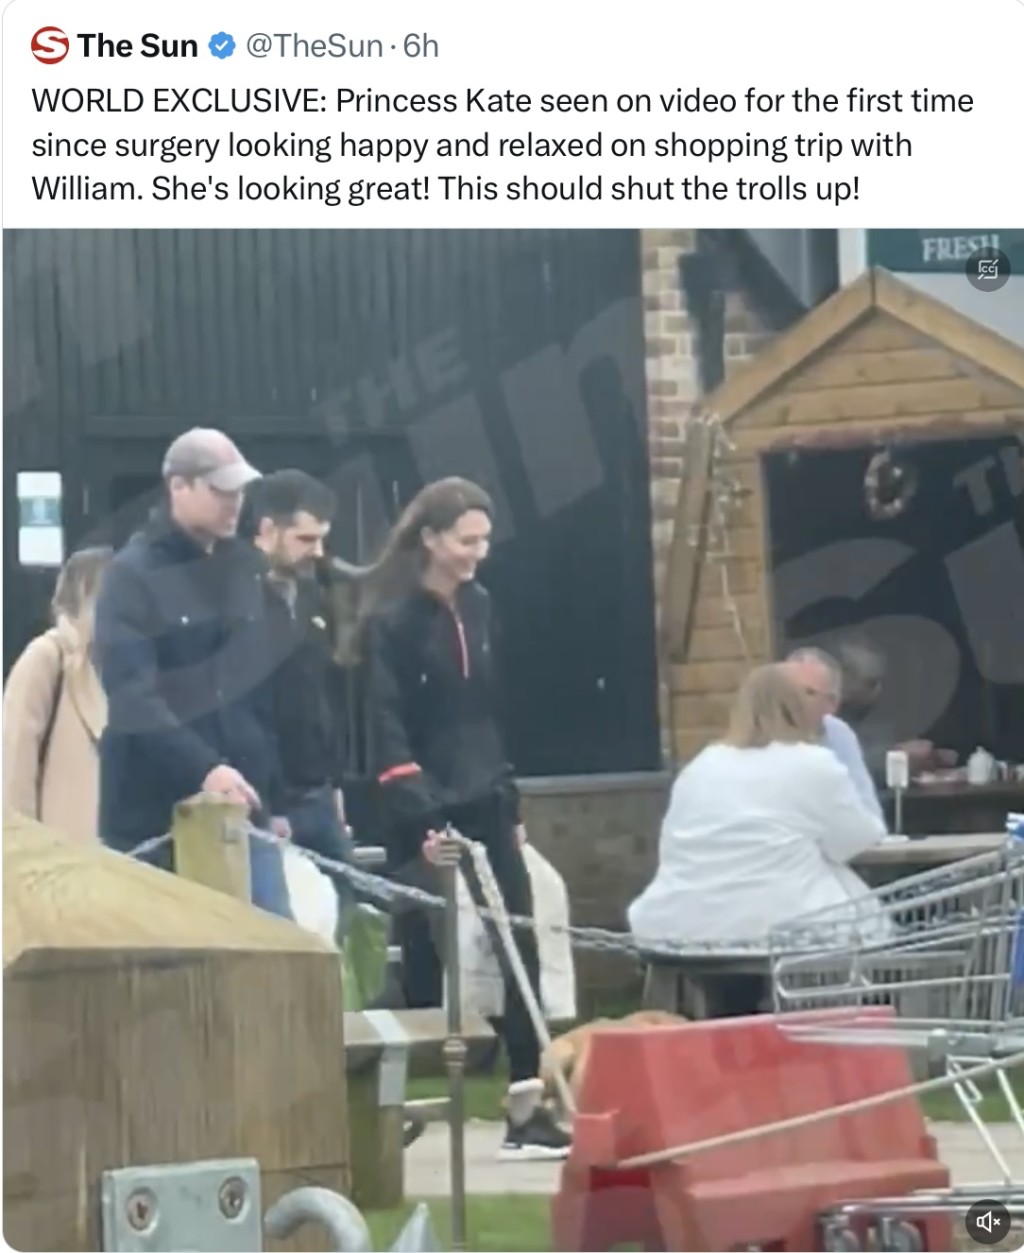 太阳报公开凯特「术后首次露面」逛农场商店的影片，引发热议。 